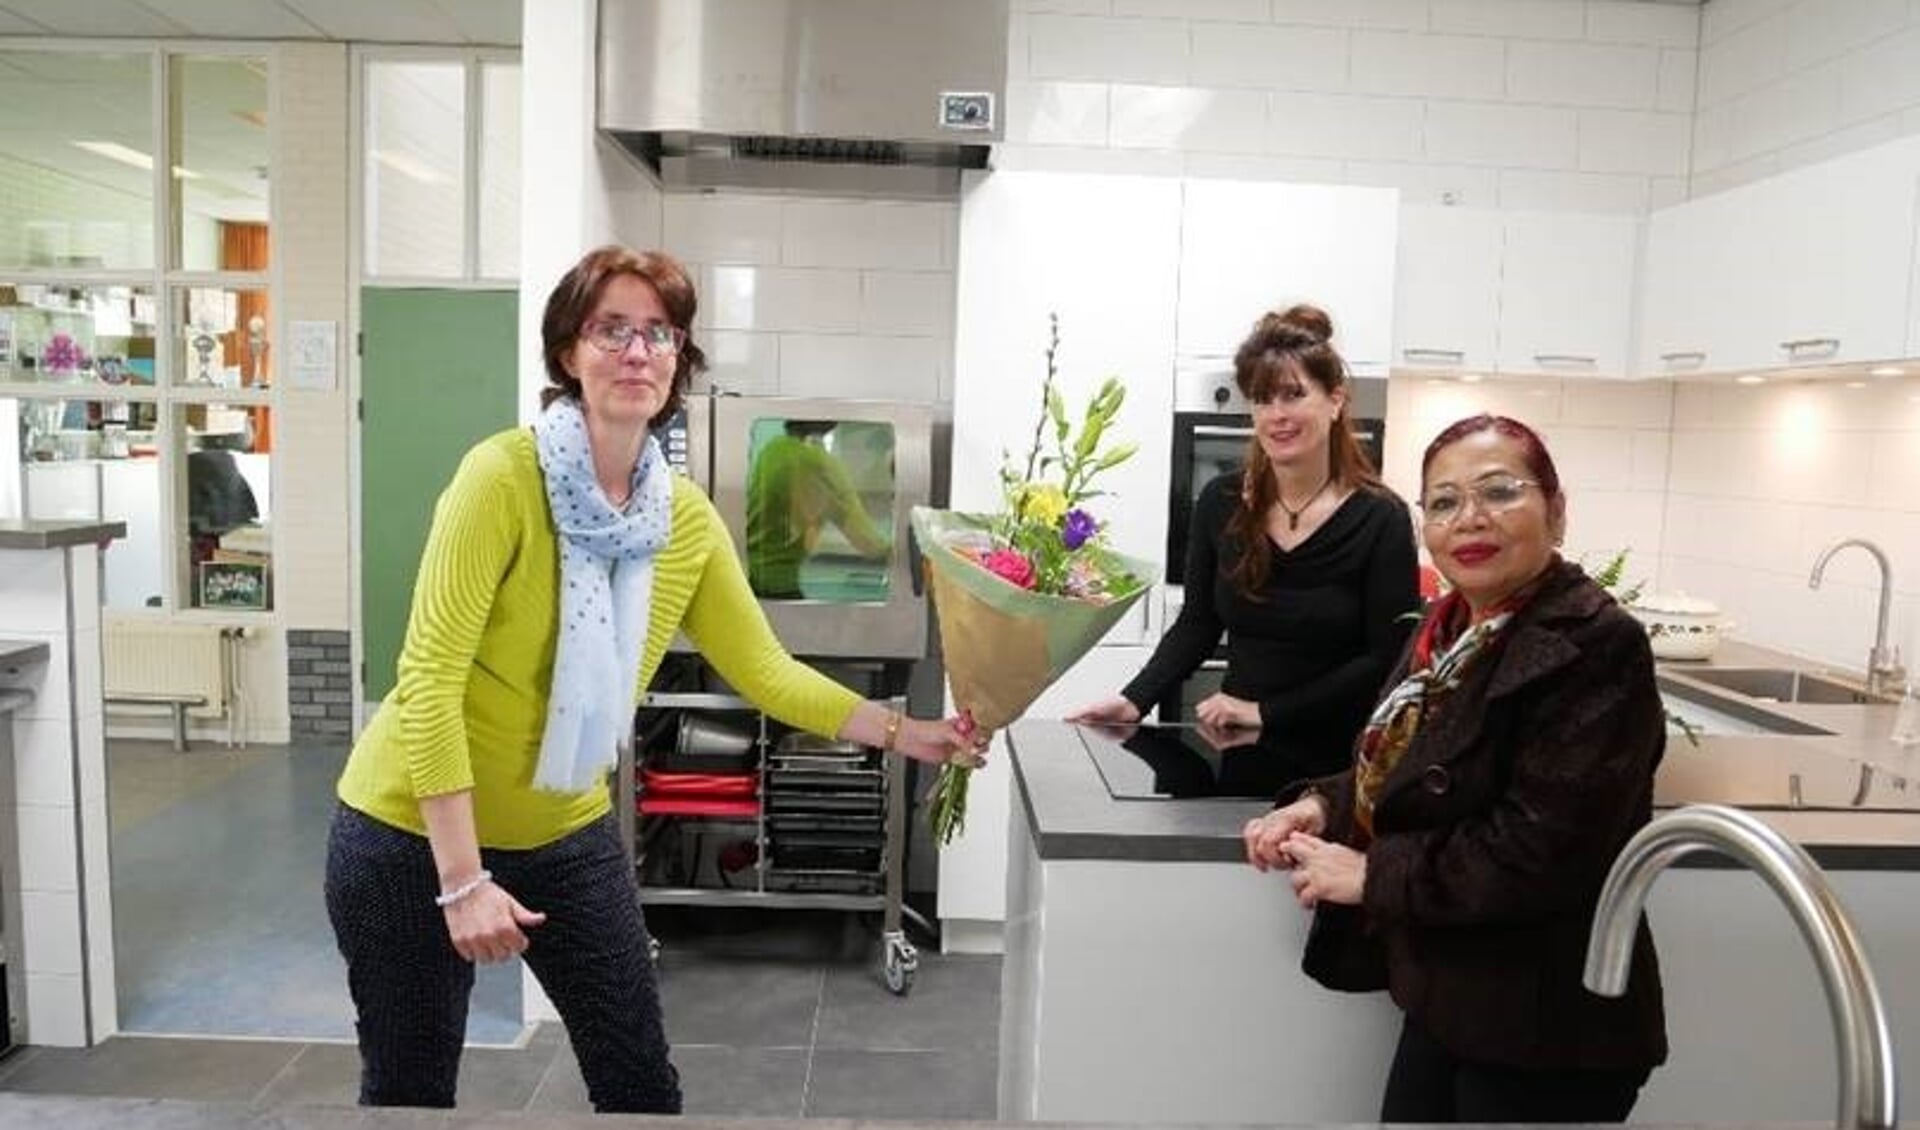 Directeur-bestuurder Jorinde Klungers (Perspectief Zutphen) overhandigt bloemen aan vrijwilliger Nina Lalenoh en sociaal beheerder Greet Zweers in de nieuwe keuken van buurthuis De Uitwijk. Foto: PR